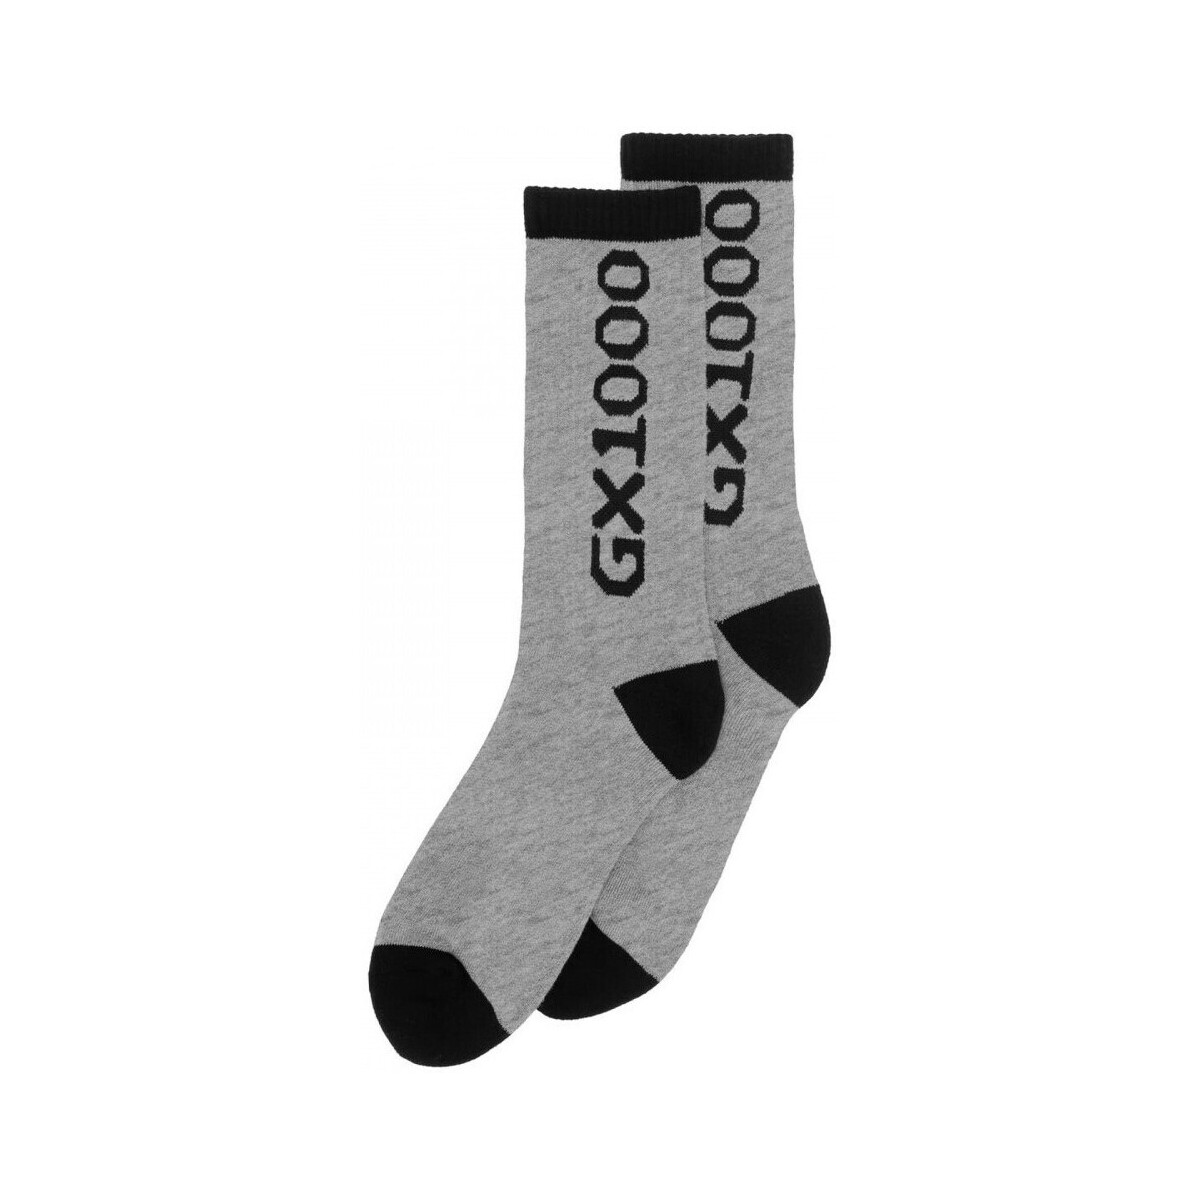 Gx1000  Socks og logo  Šedá